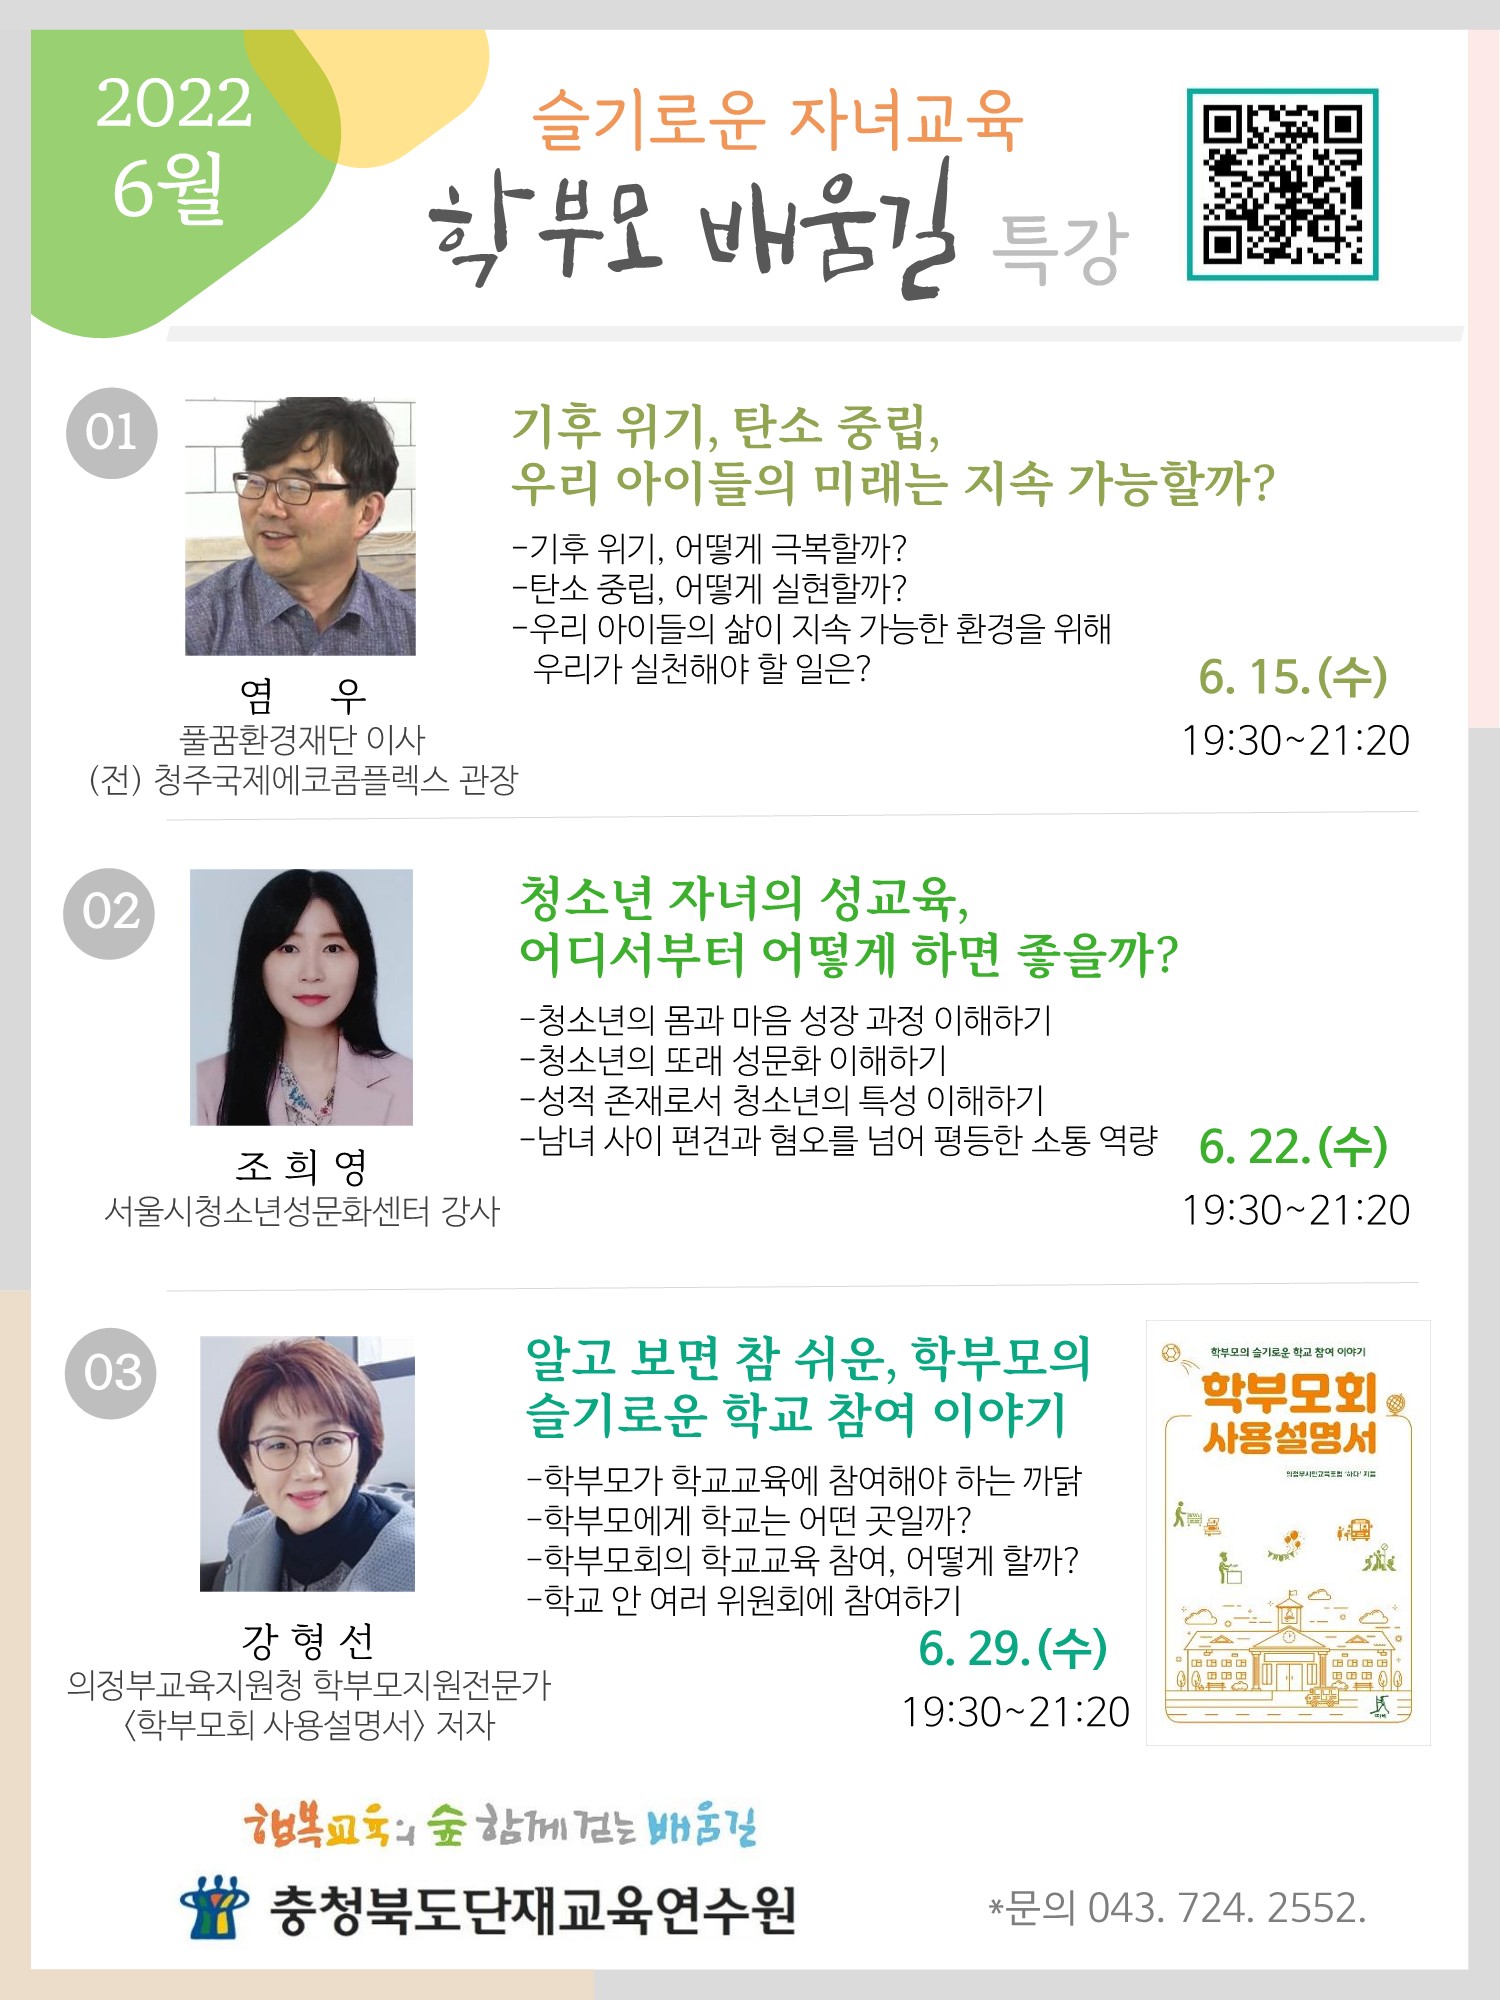 충청북도단재교육연수원 북부분원_웹안내문-6월 학부모배움길 특강